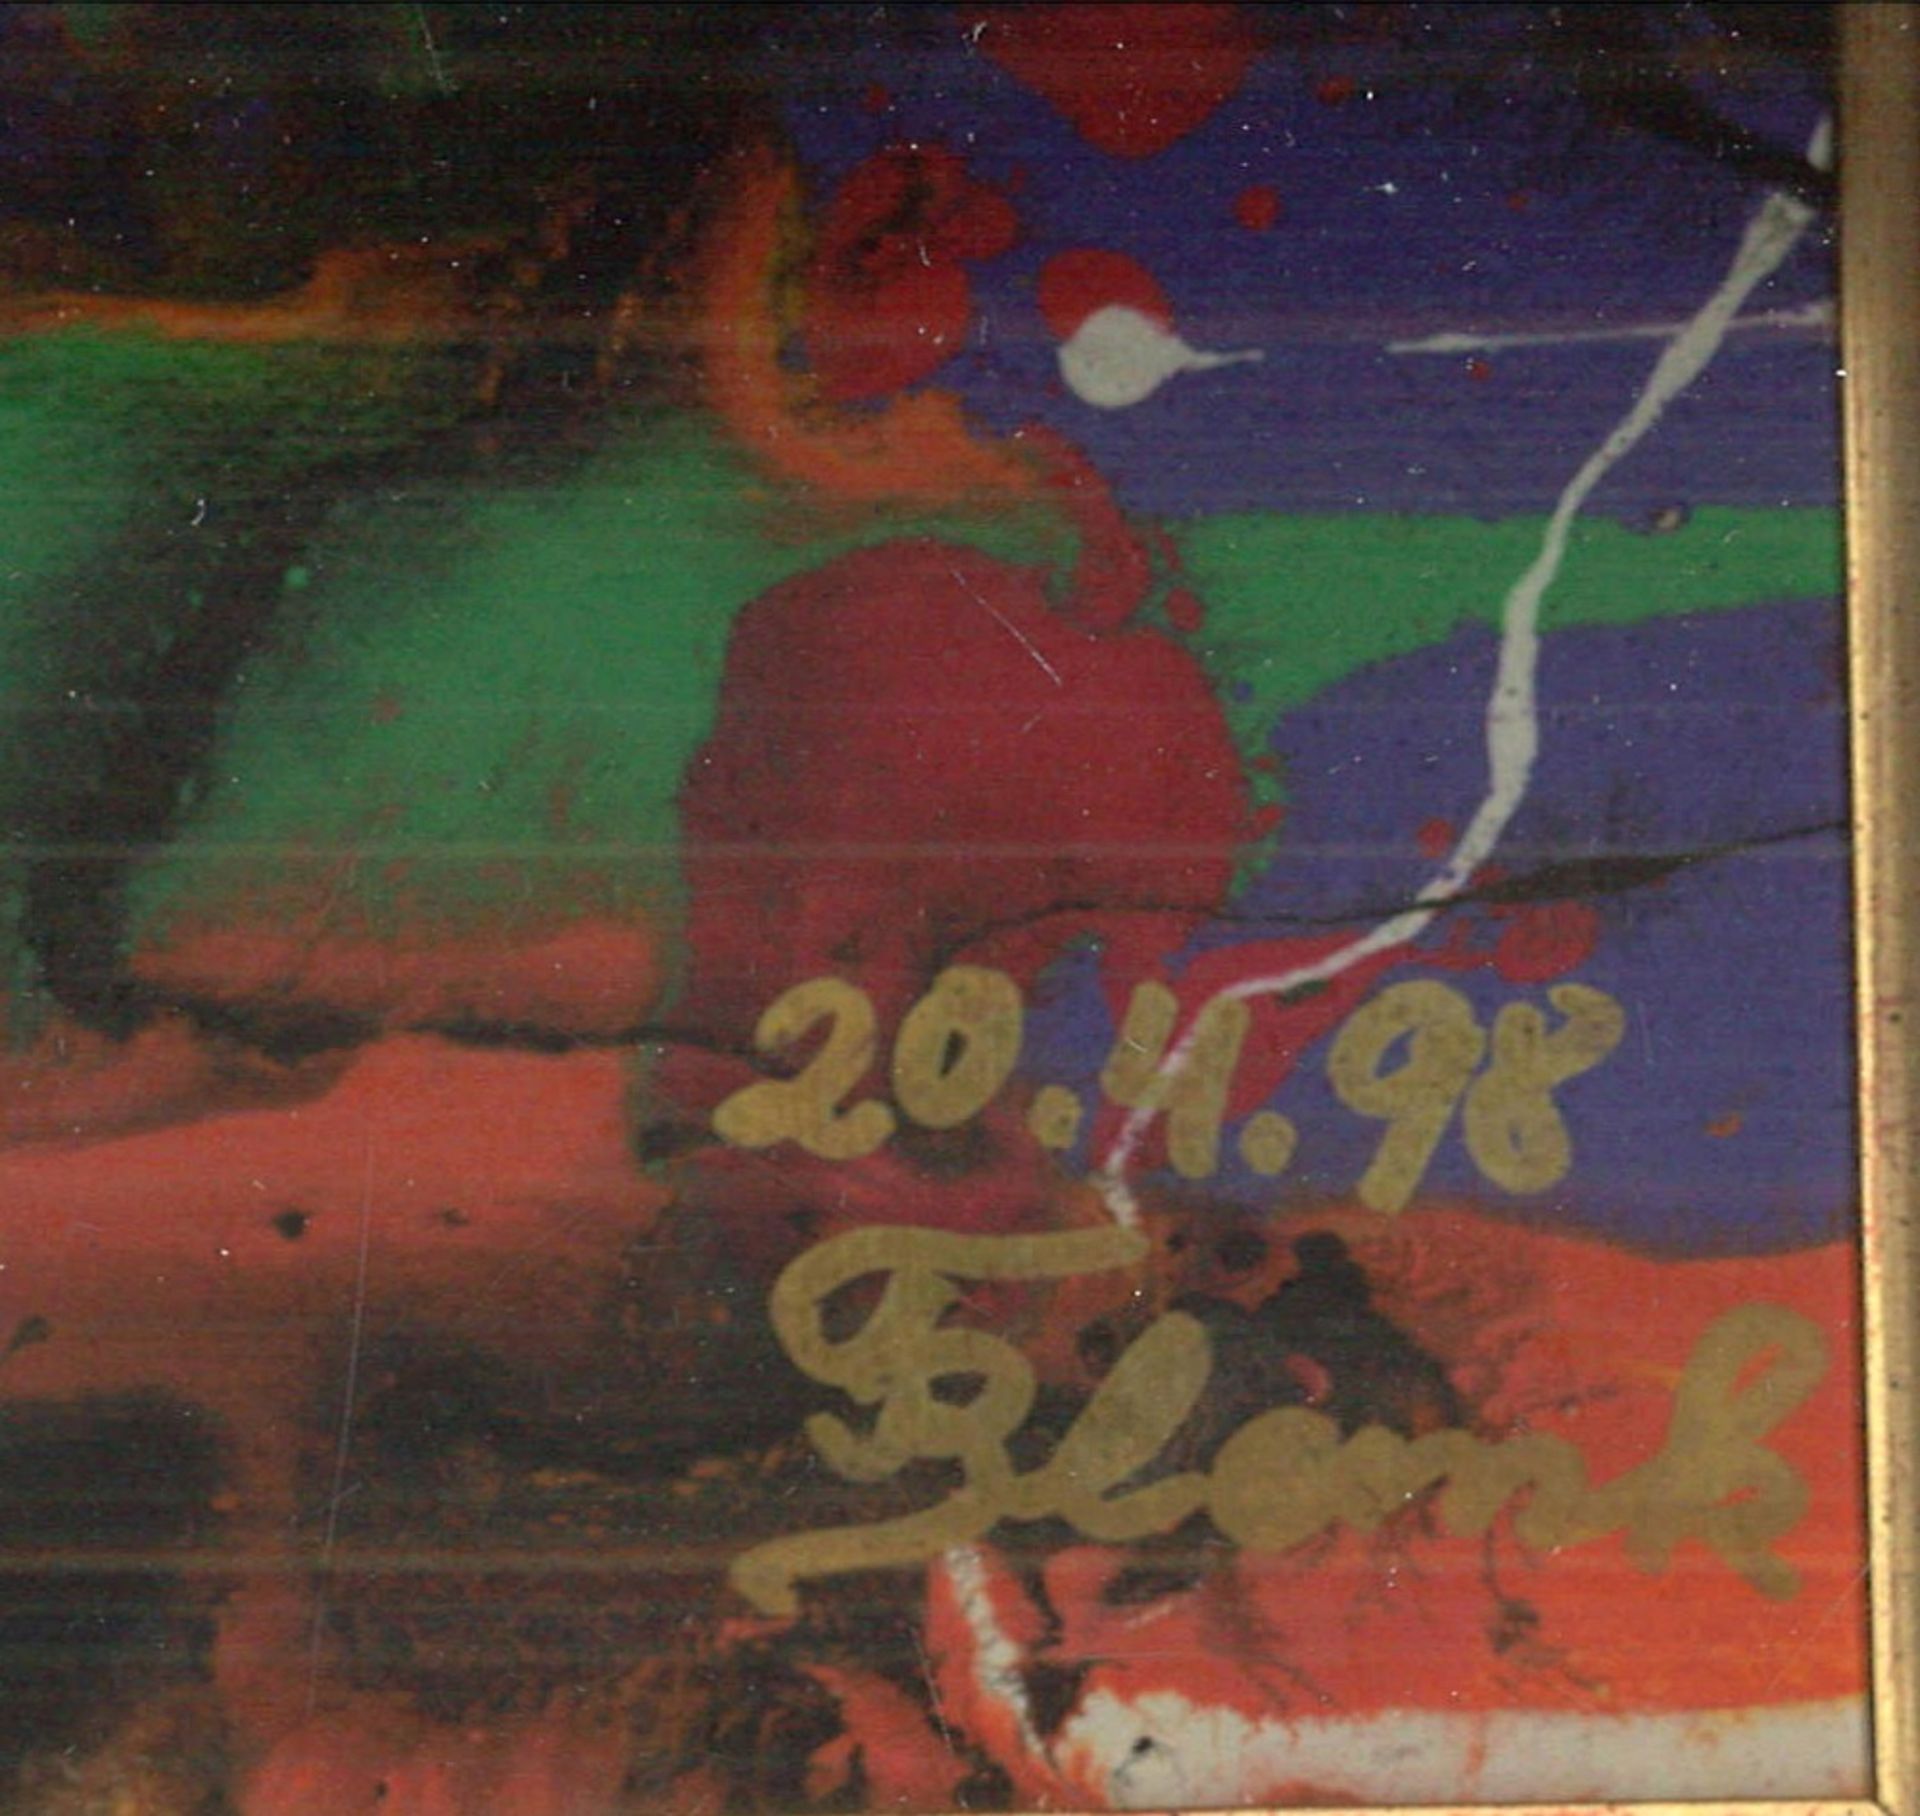 wohl Franz J. BLANK (1932)? Acryl auf Platte "abstrakte Komposition" rechts unten Signatur F Blank - Bild 2 aus 2